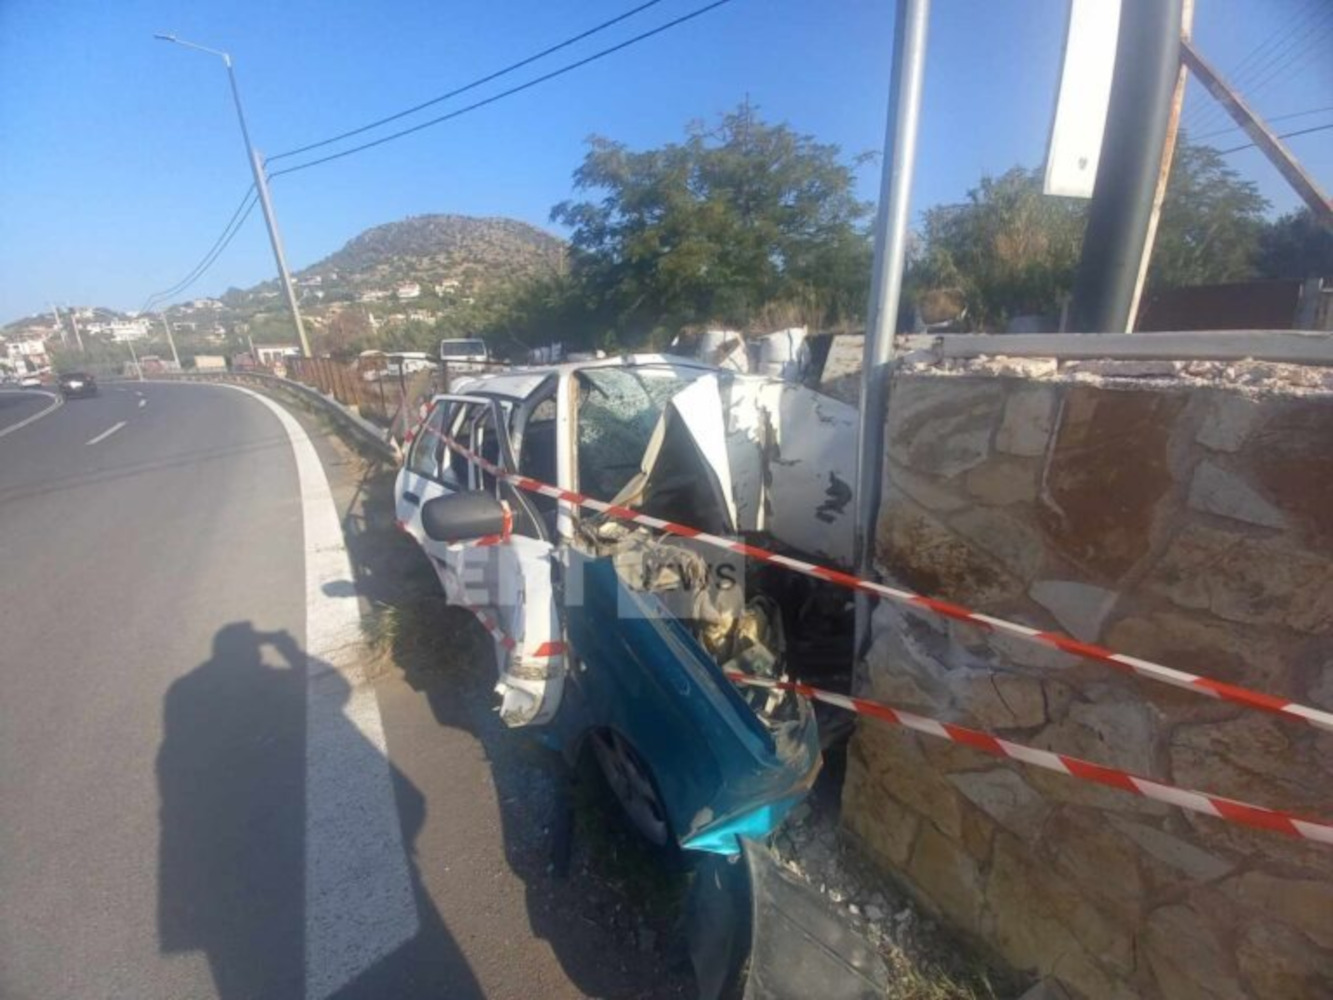 Τροχαίο στην Αθηνών – Σουνίου: Αυτοκίνητο καρφώθηκε σε τοίχο και έγινε σμπαράλια